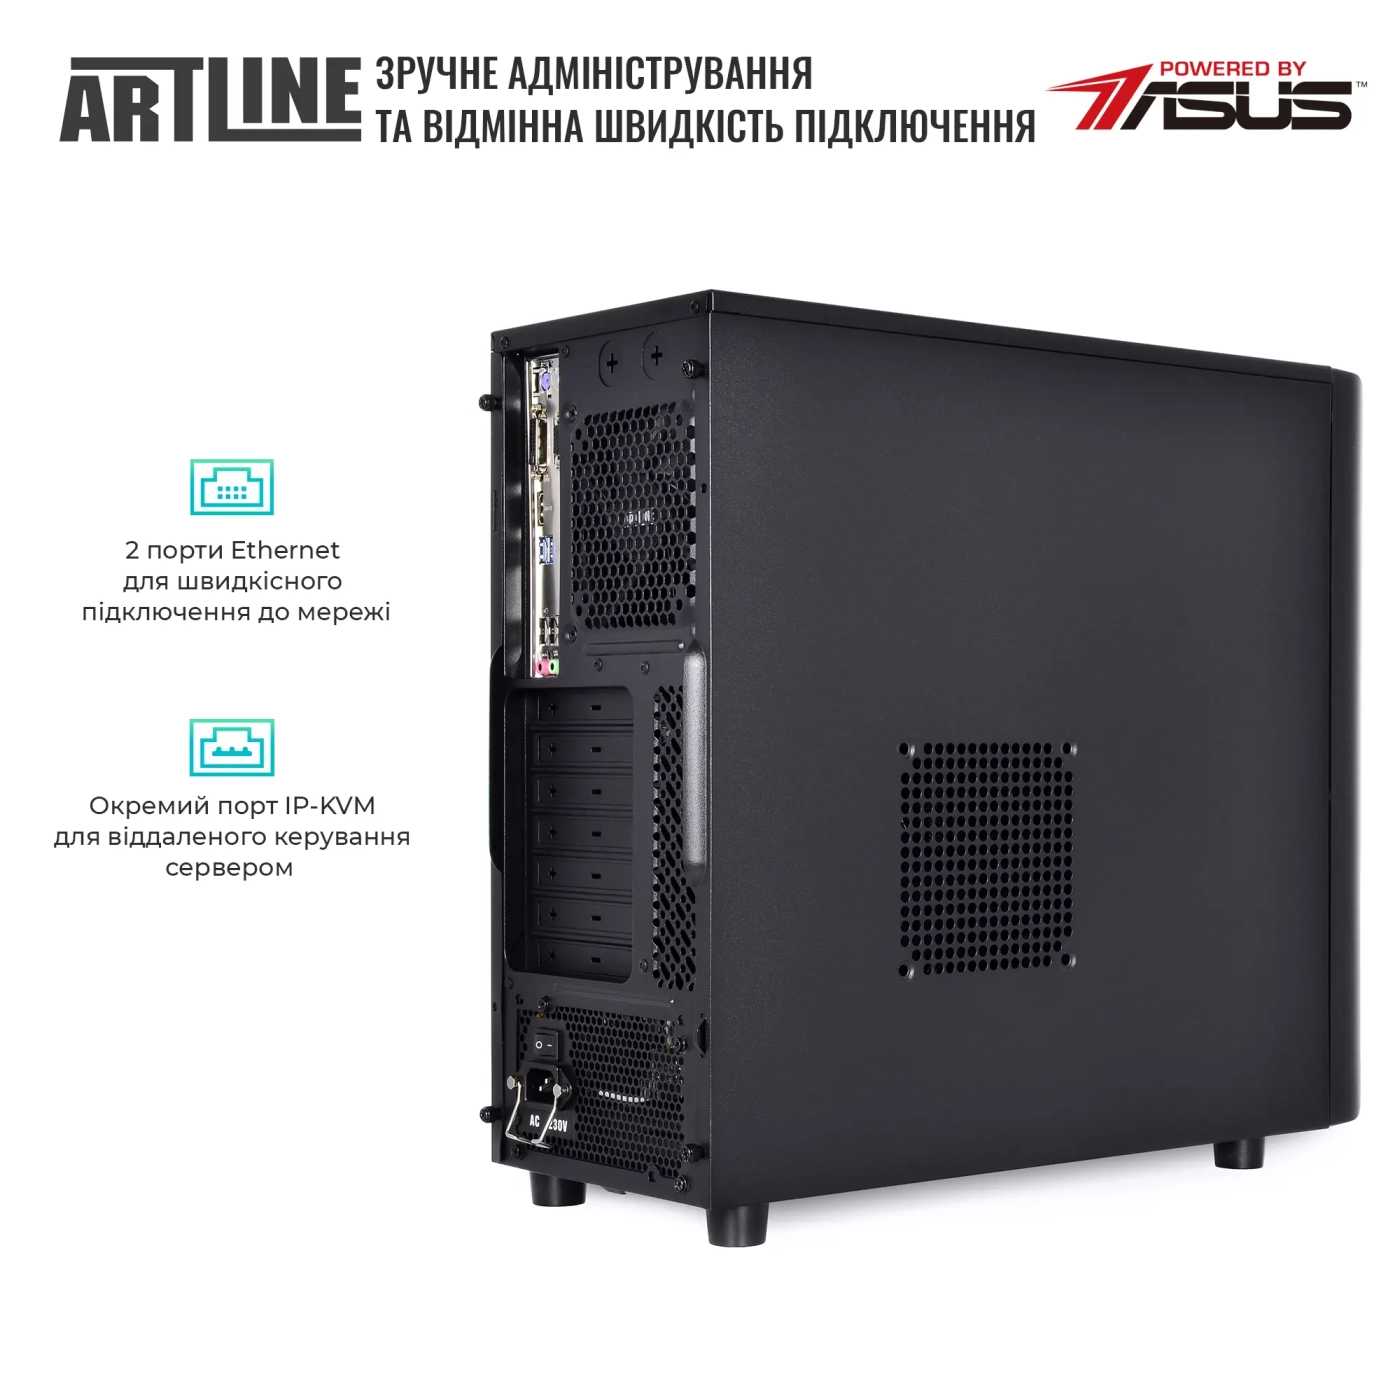 Купить Сервер ARTLINE Business T35 (T35v41) - фото 5